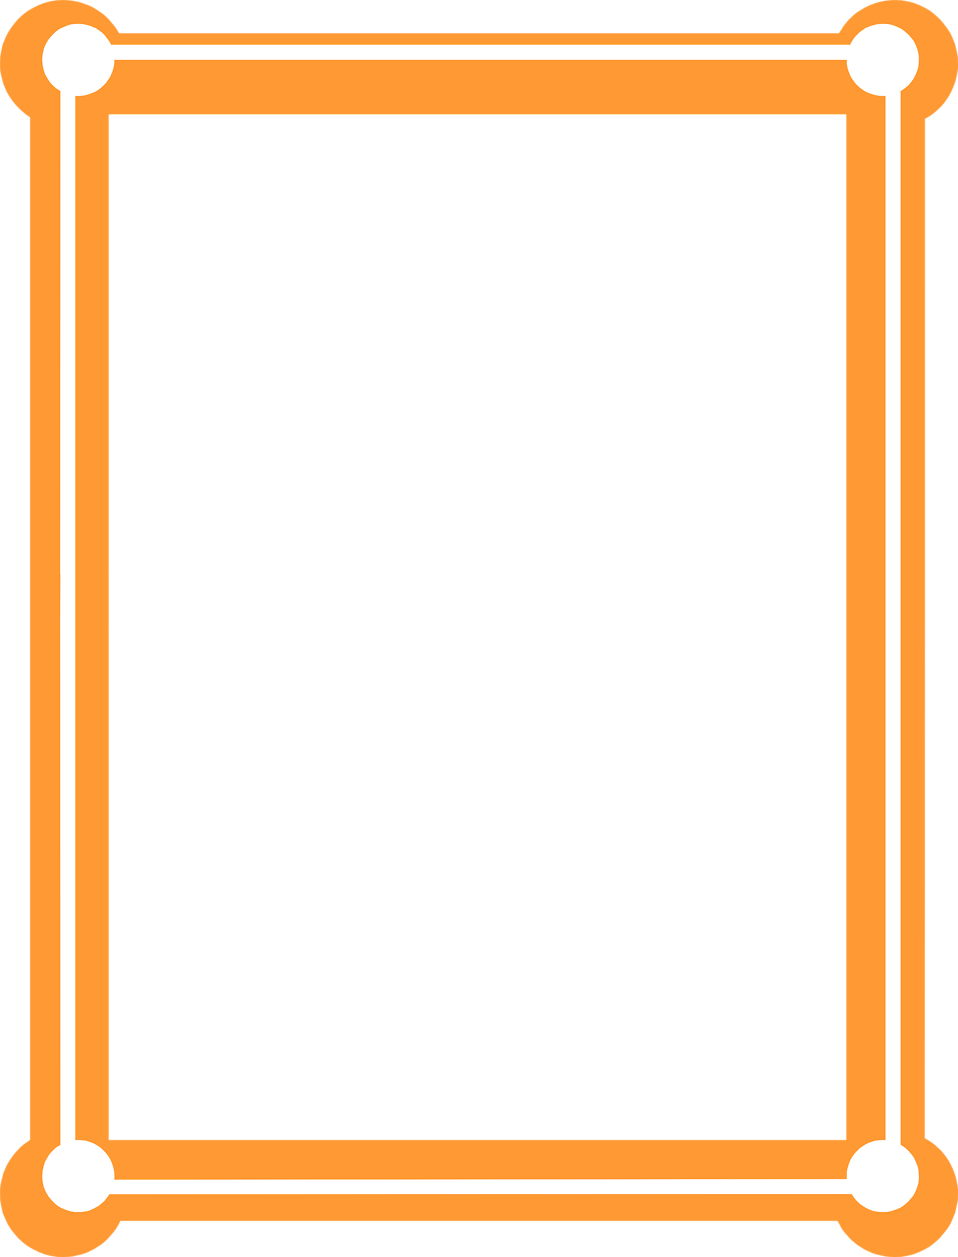 Orange Frame PNG HD Image